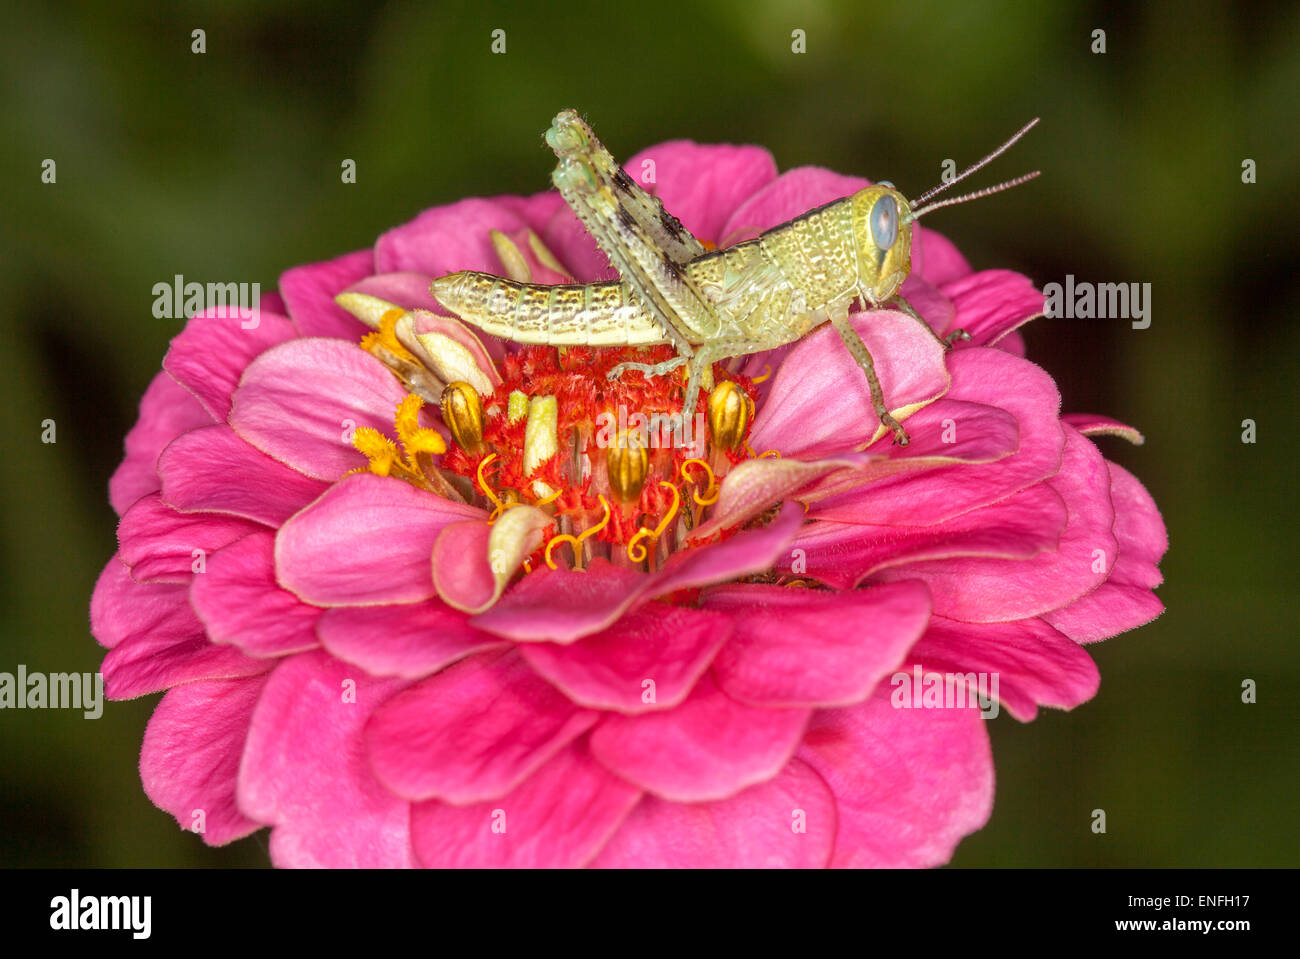 Verde chiaro / marrone grasshopper con occhio enorme visibile su vivid pink zinnia fiore contro sfondo verde scuro Foto Stock